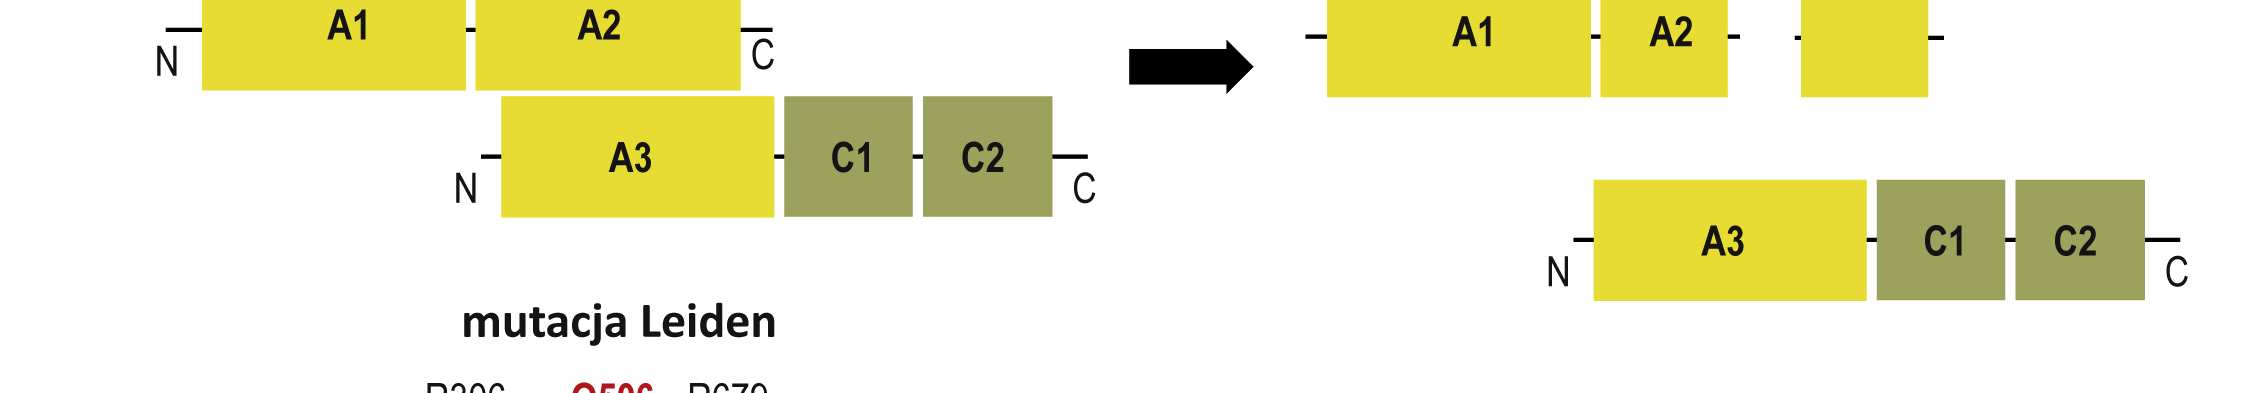 Aktywacja FV następuje w wyniku ograniczonego cięcia trombiną i FXa (w miejscach zaznaczonych strzałkami) co powoduje degradację podjednostki B i powstanie aktywnego FVa poprzez niekowalencyjną